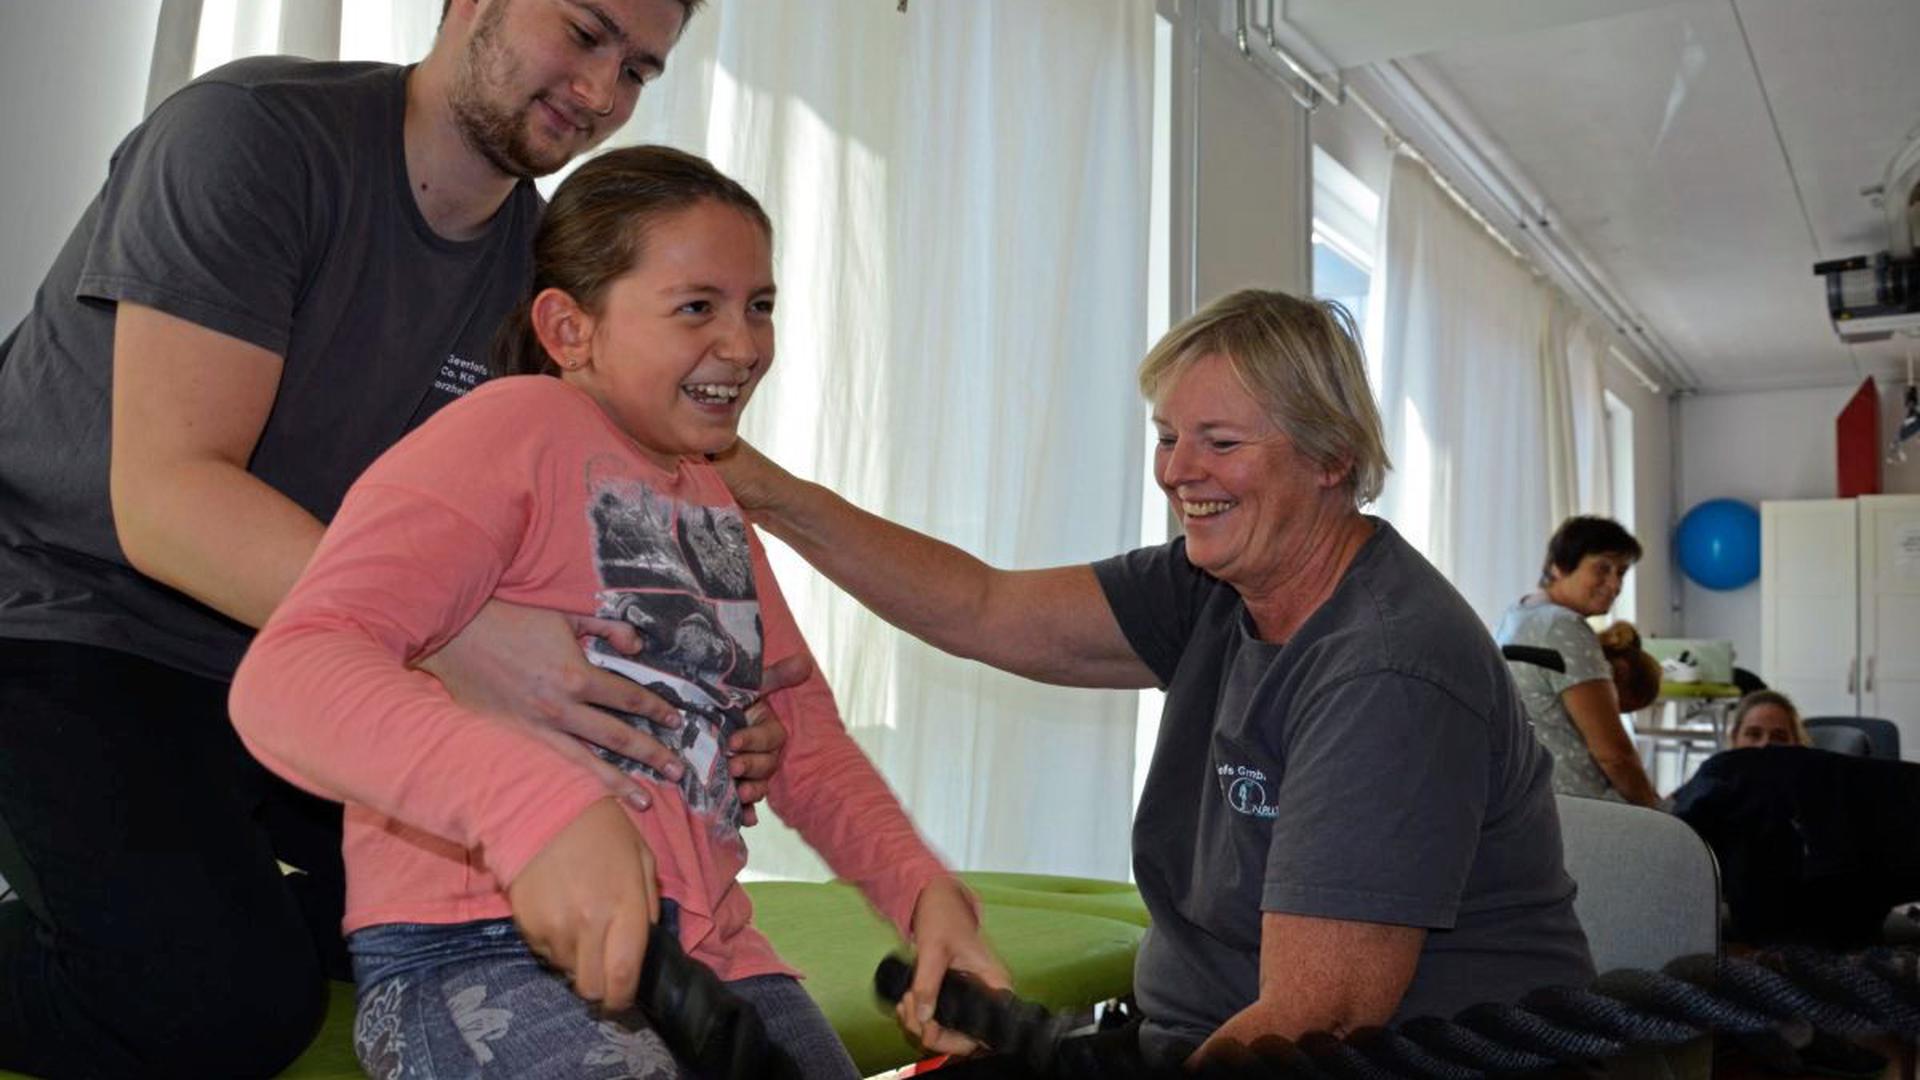 Mit Spaß und Eifer dabei: Die neunjährige Clara trainiert mit Helfer Bakir und Daniela Dorschner-Geerlofs an Seilen, um die Rumpfstabilität zu verbessern. Viele Wochen hat das Mädchen schon in der Pforzheimer Privatklinik verbracht mit dem großen Ziel, eines Tages wieder laufen zu lernen.